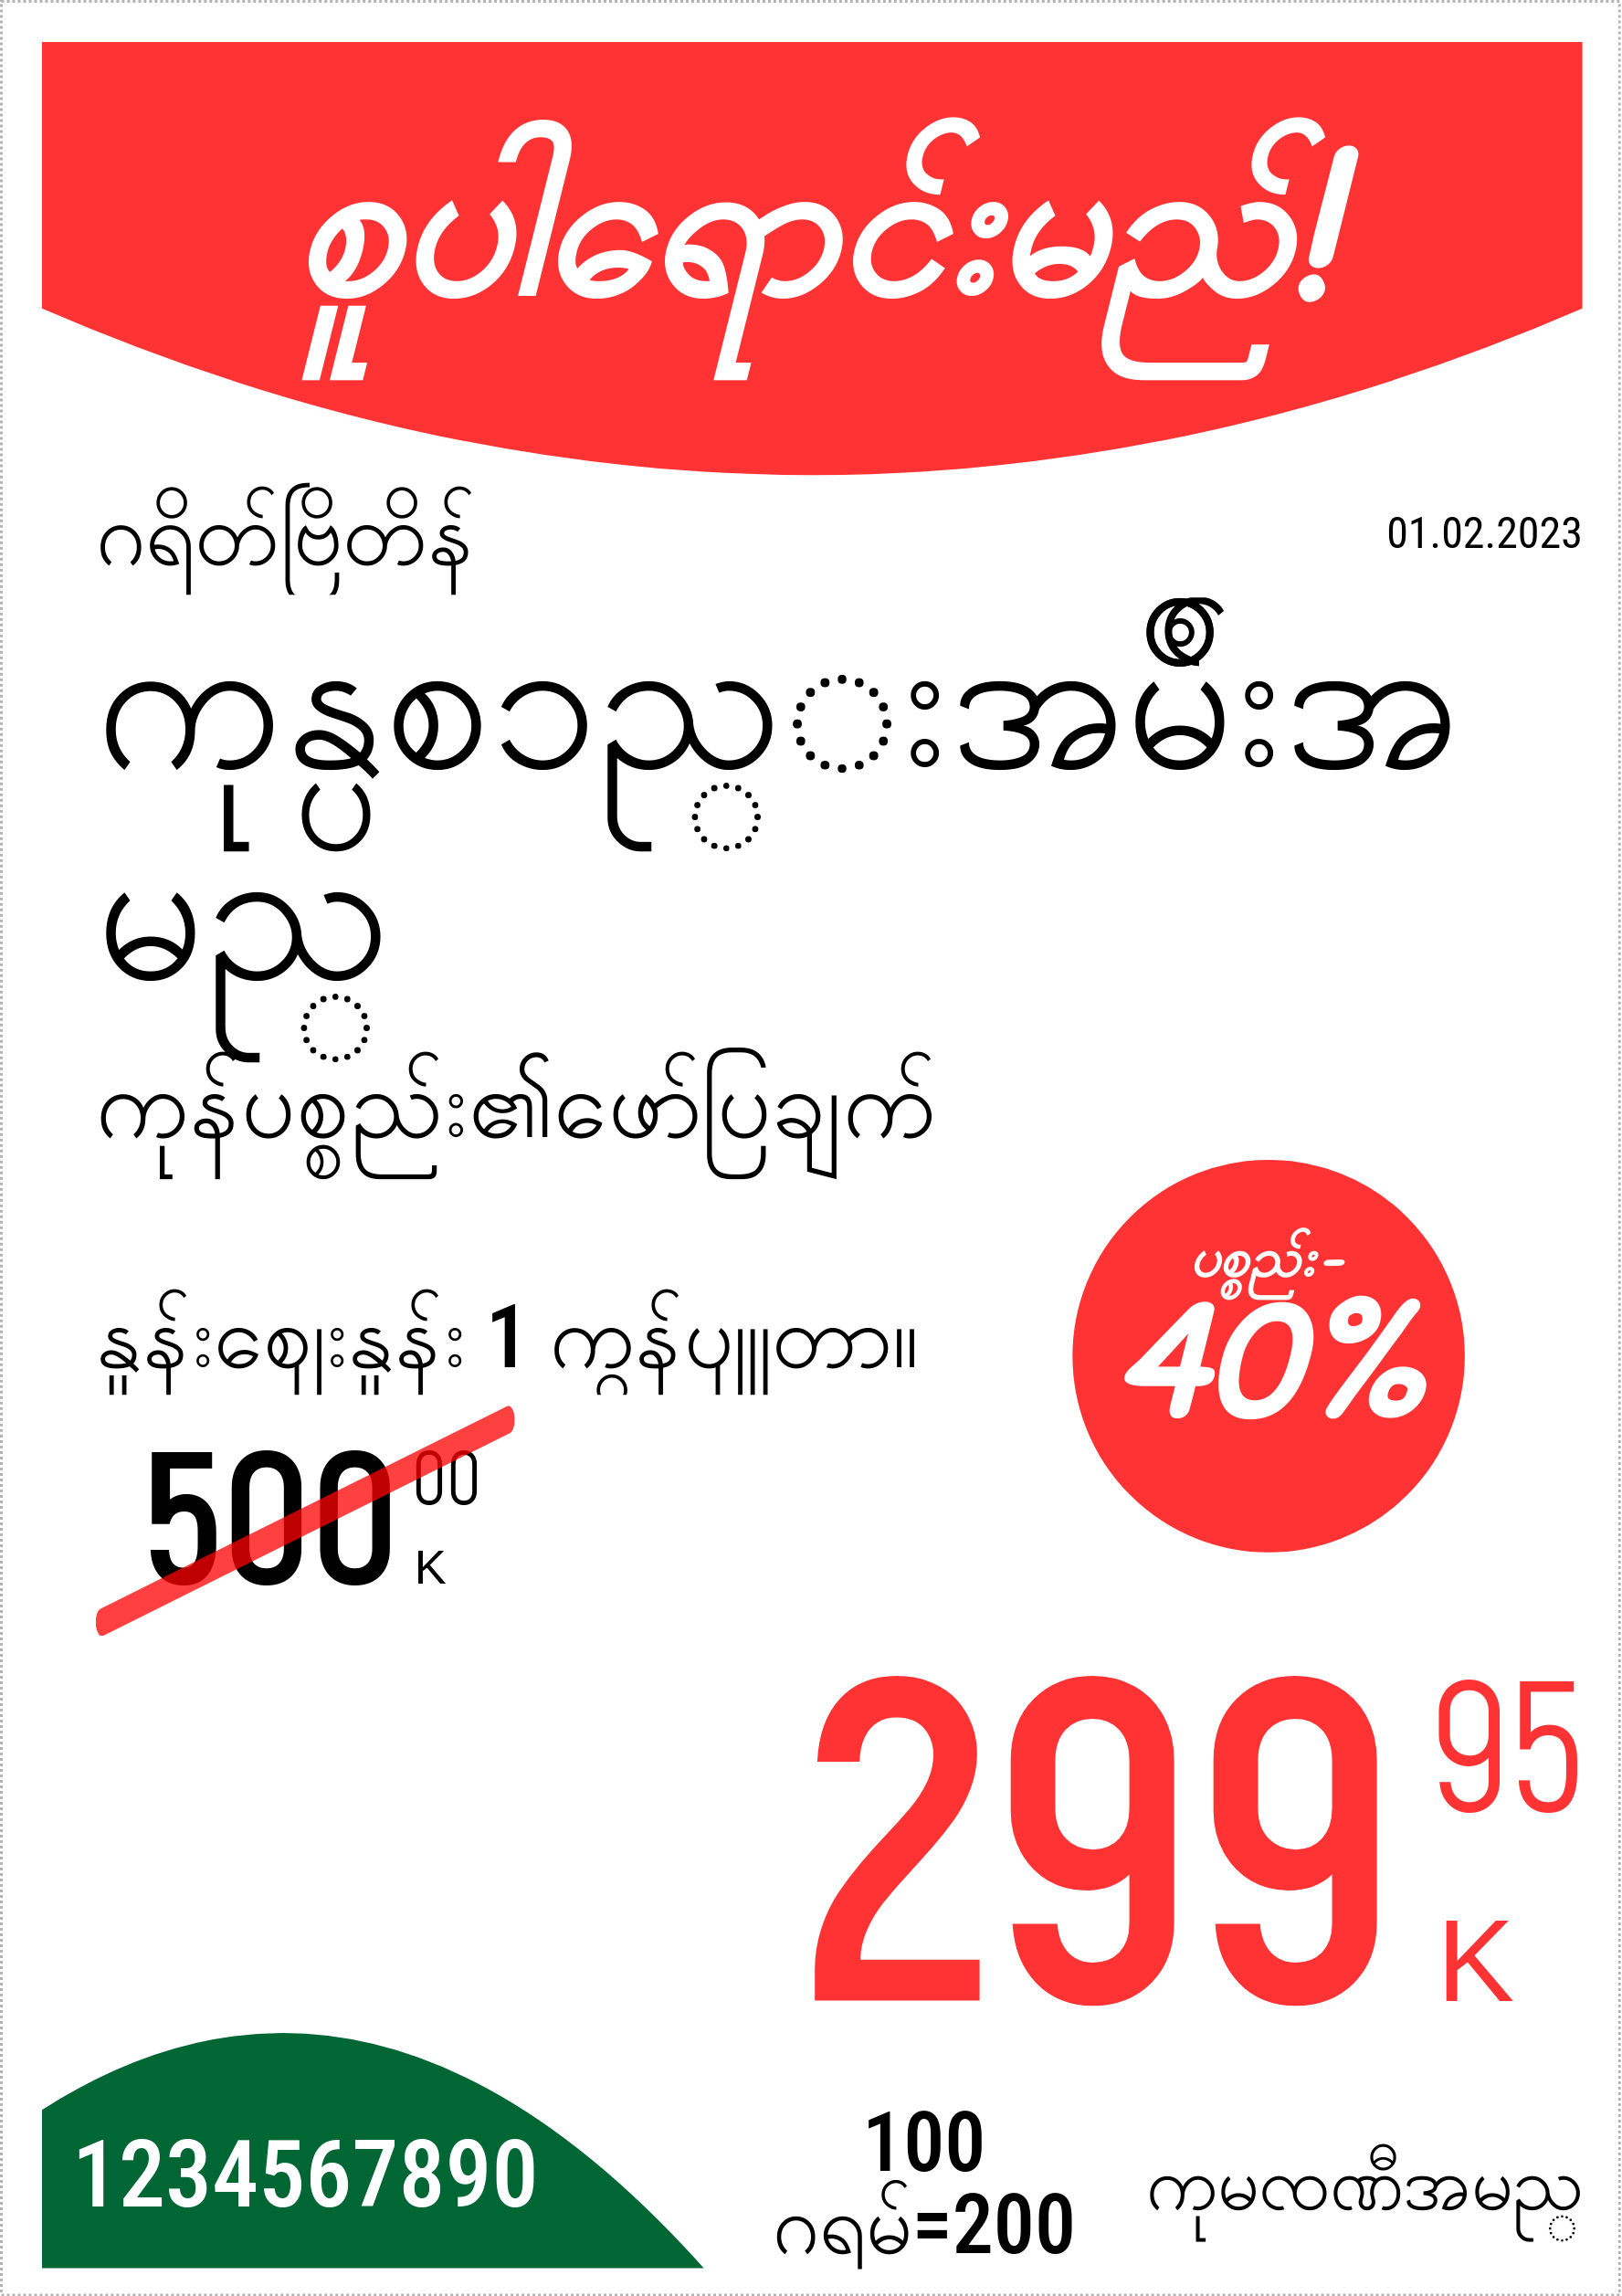 မြန်မာဘာသာ မူလနေရာ / ဒေါင်လိုက် / တစ်ဦးက5(တစ်ဝက်4 စာရွက်) / ပရိုမိုးရှင်း